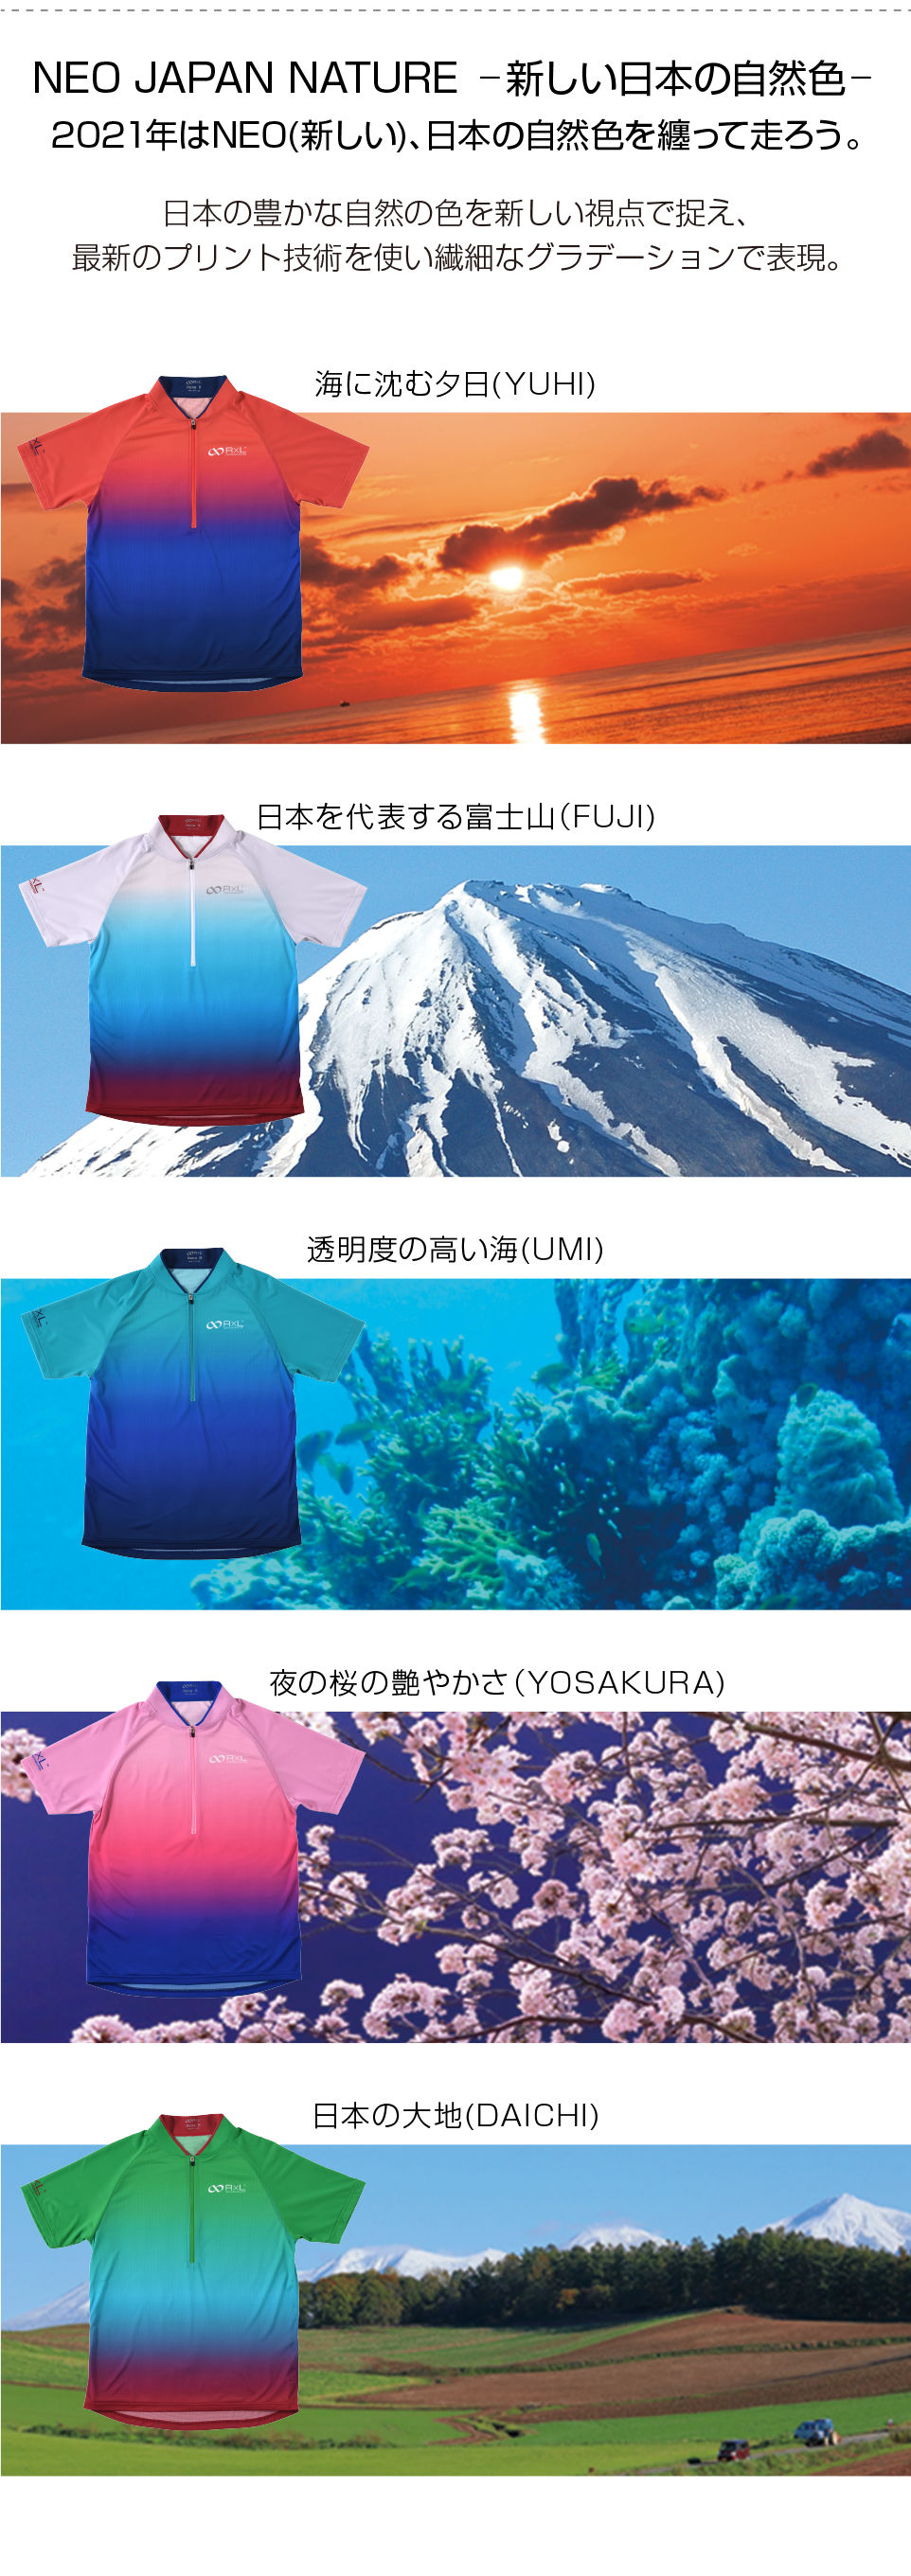 NEO JAPAN NATURE 新しい日本の自然色 2021年はNEO(新しい)、日本の自然色を纏って走ろう。日本の豊かな自然の色を新しい視点で捉え、最新のプリント技術を使い繊細なグラデーションで表現。海に沈む夕日(YUHI) 日本を代表する富士山(FUJI) 透明度の高い海(UMI) 夜の桜の艶やかさ(YOSAKURA) 日本の大地(DAICHI)